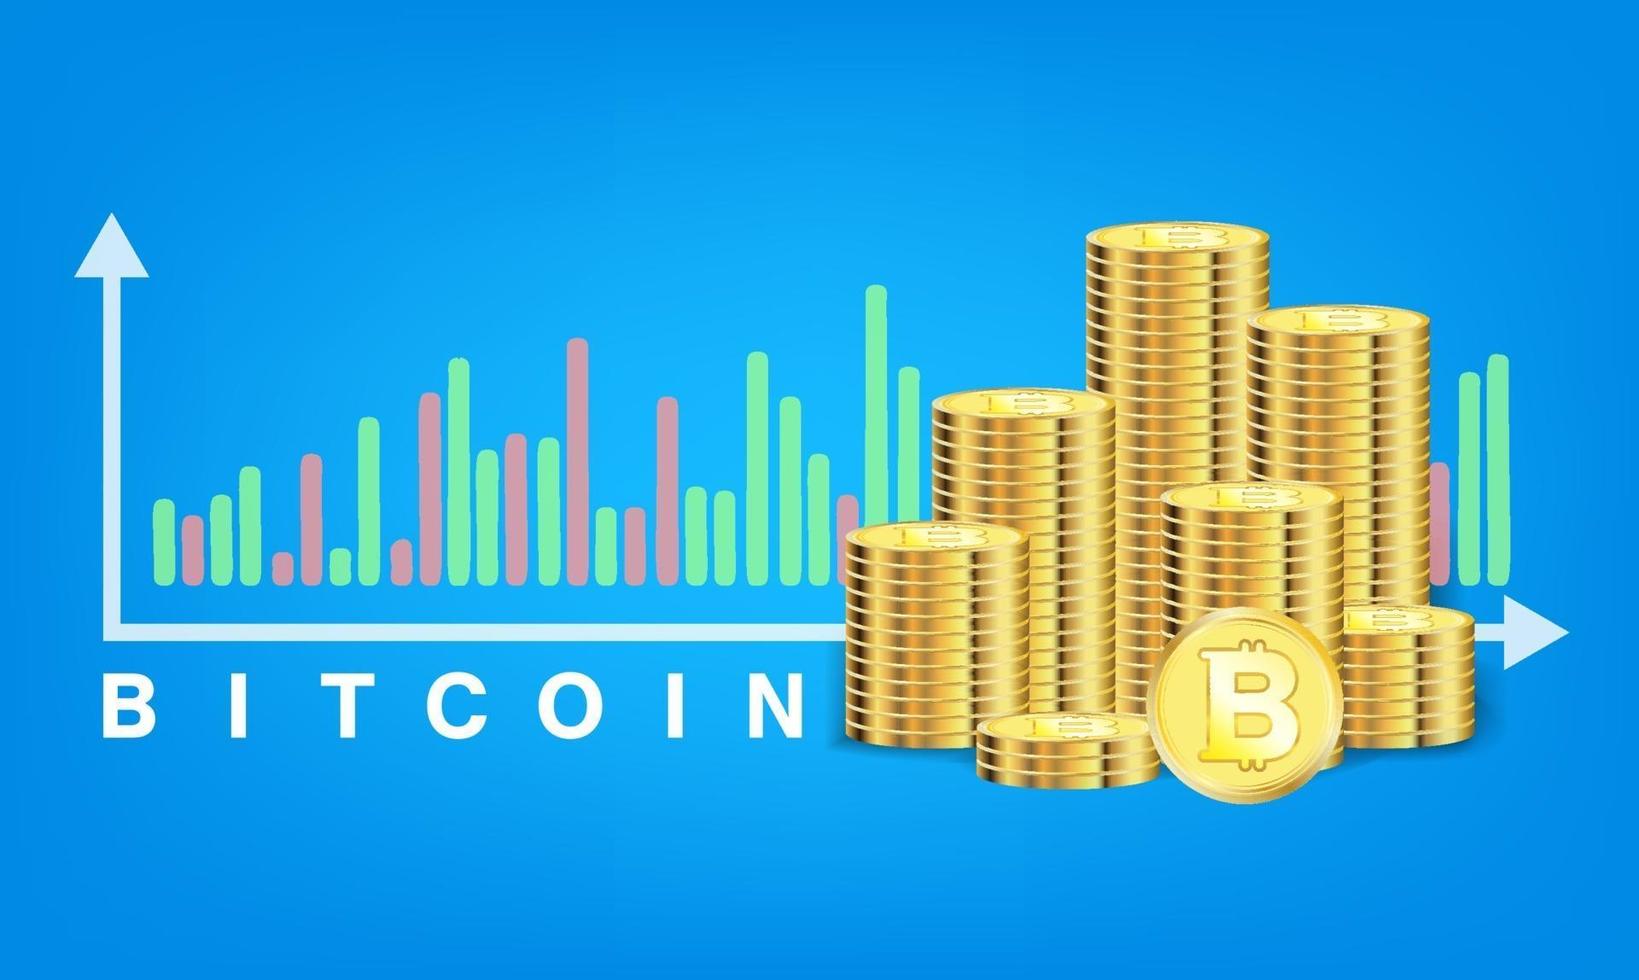 pile of golden bitcoin coins vector